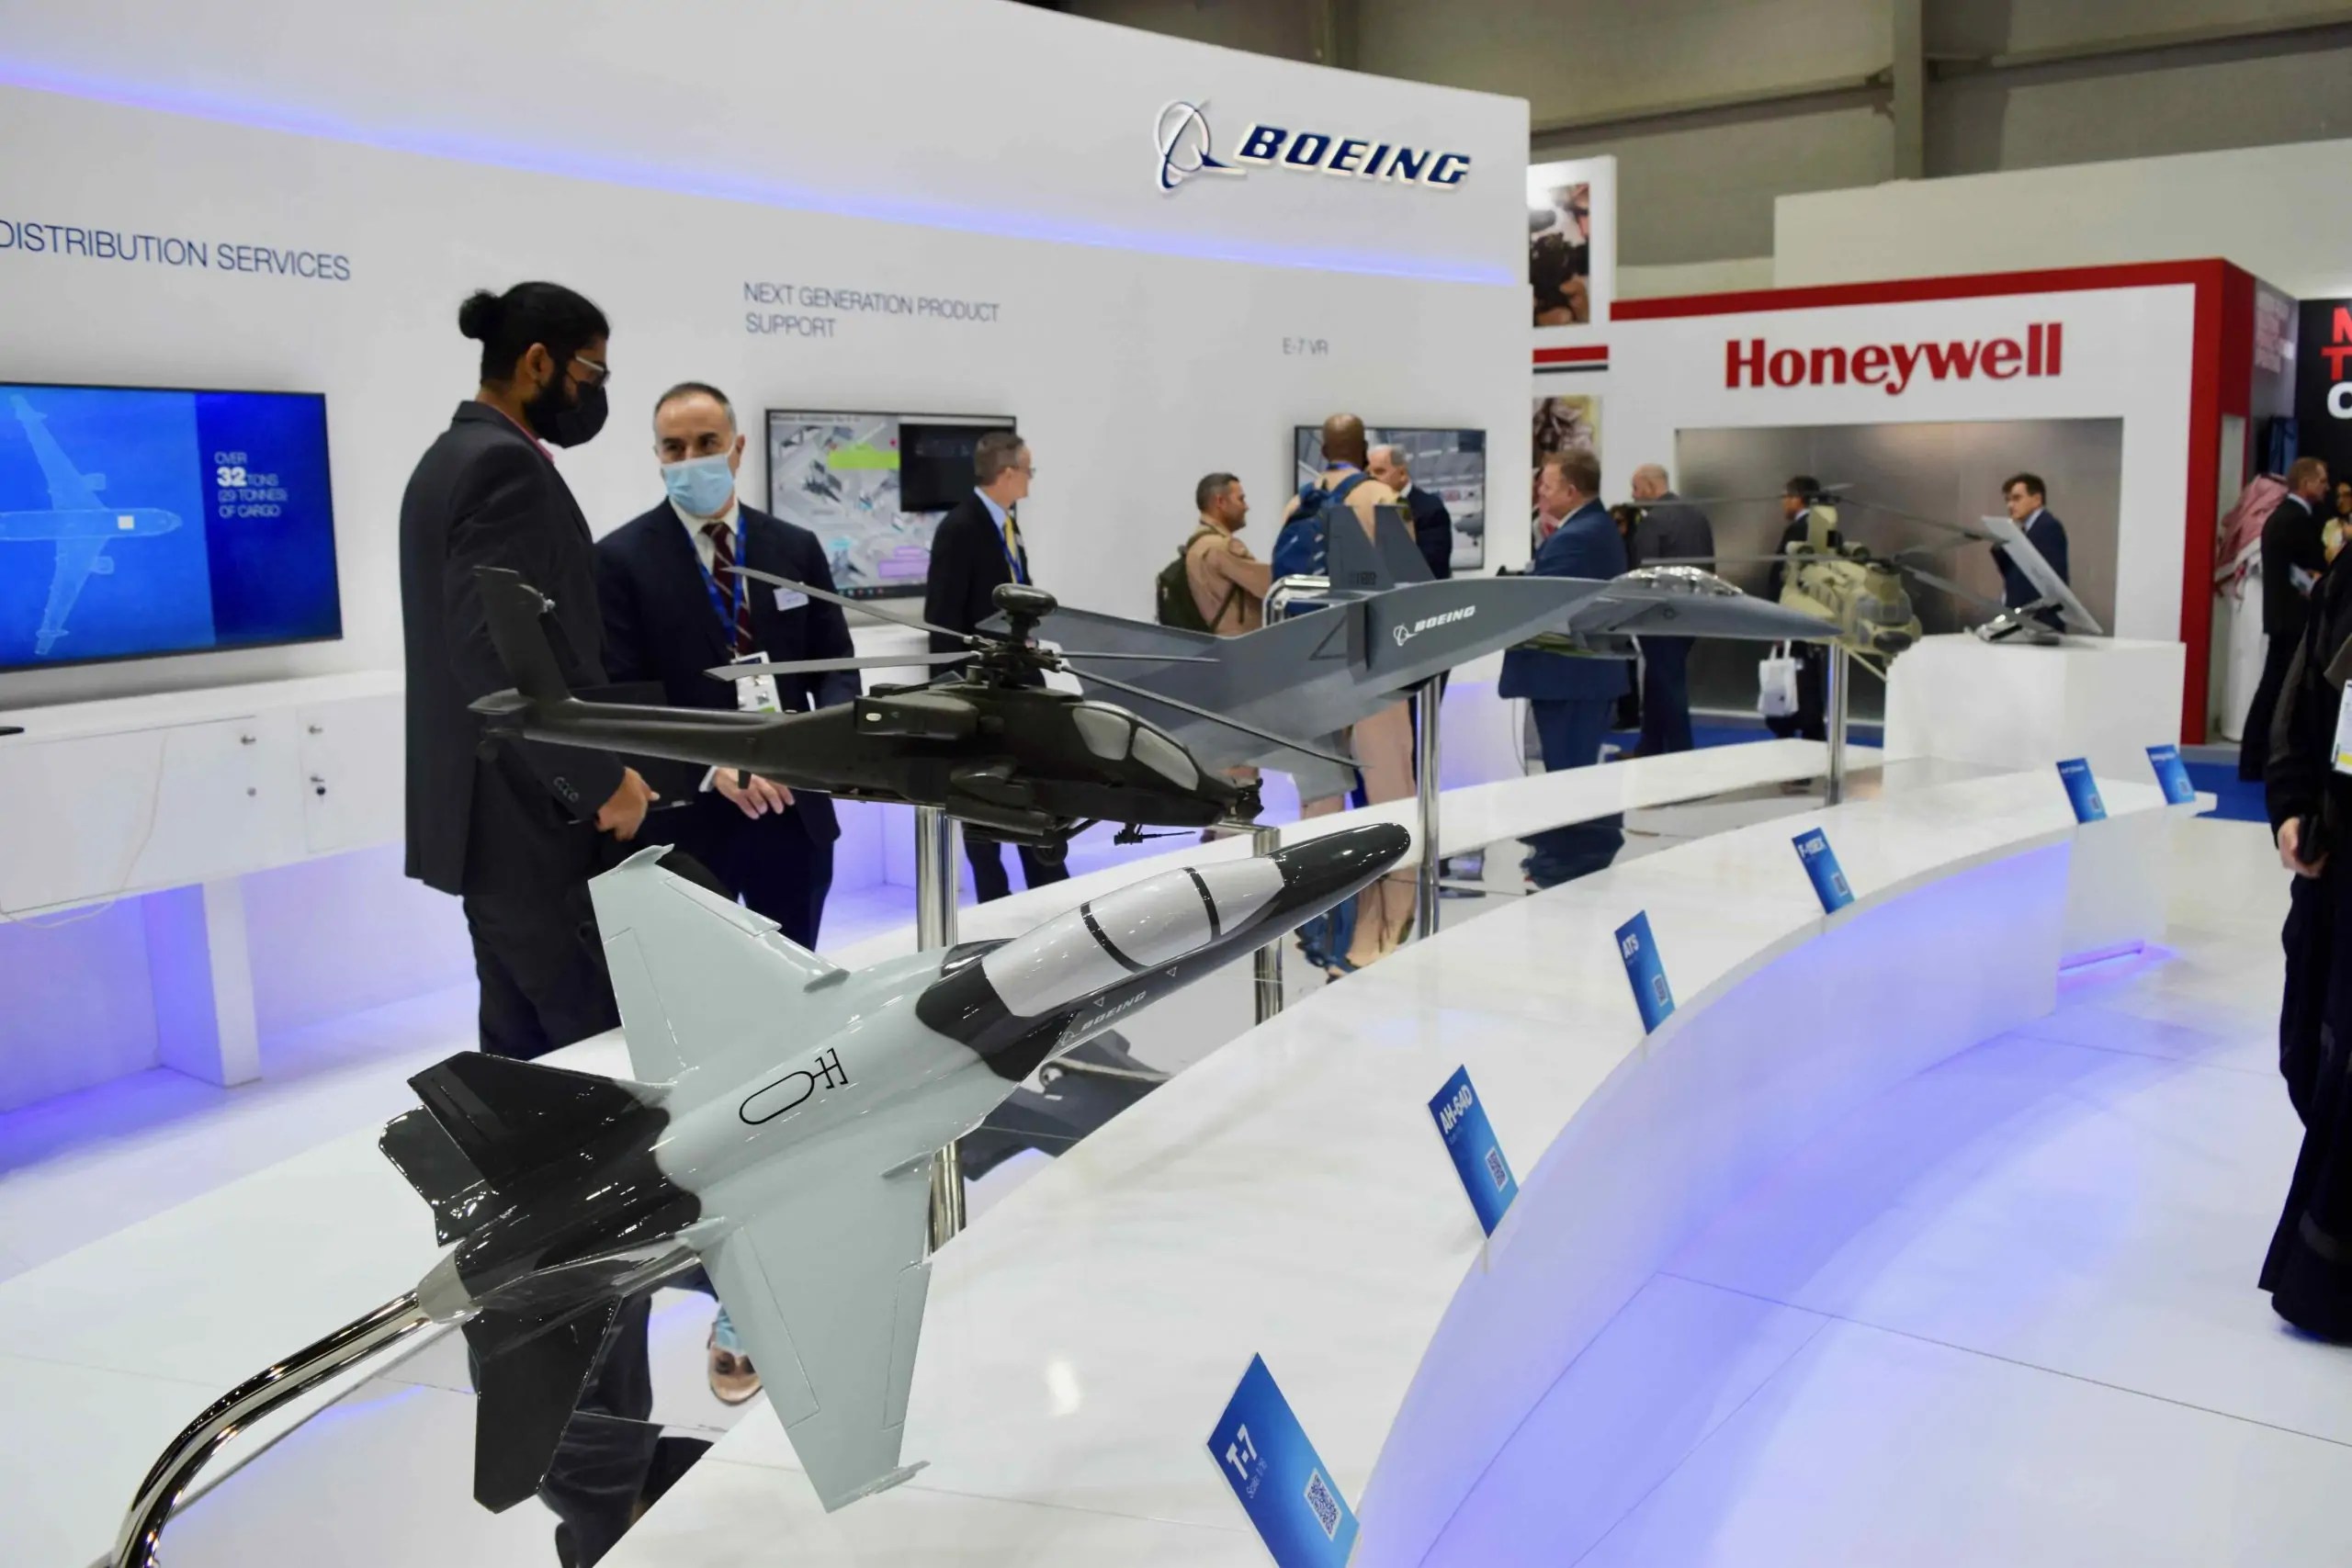 بوينج تعرض احدث منتجاتها و قدراتها في معرض الدفاع العالمي 2022